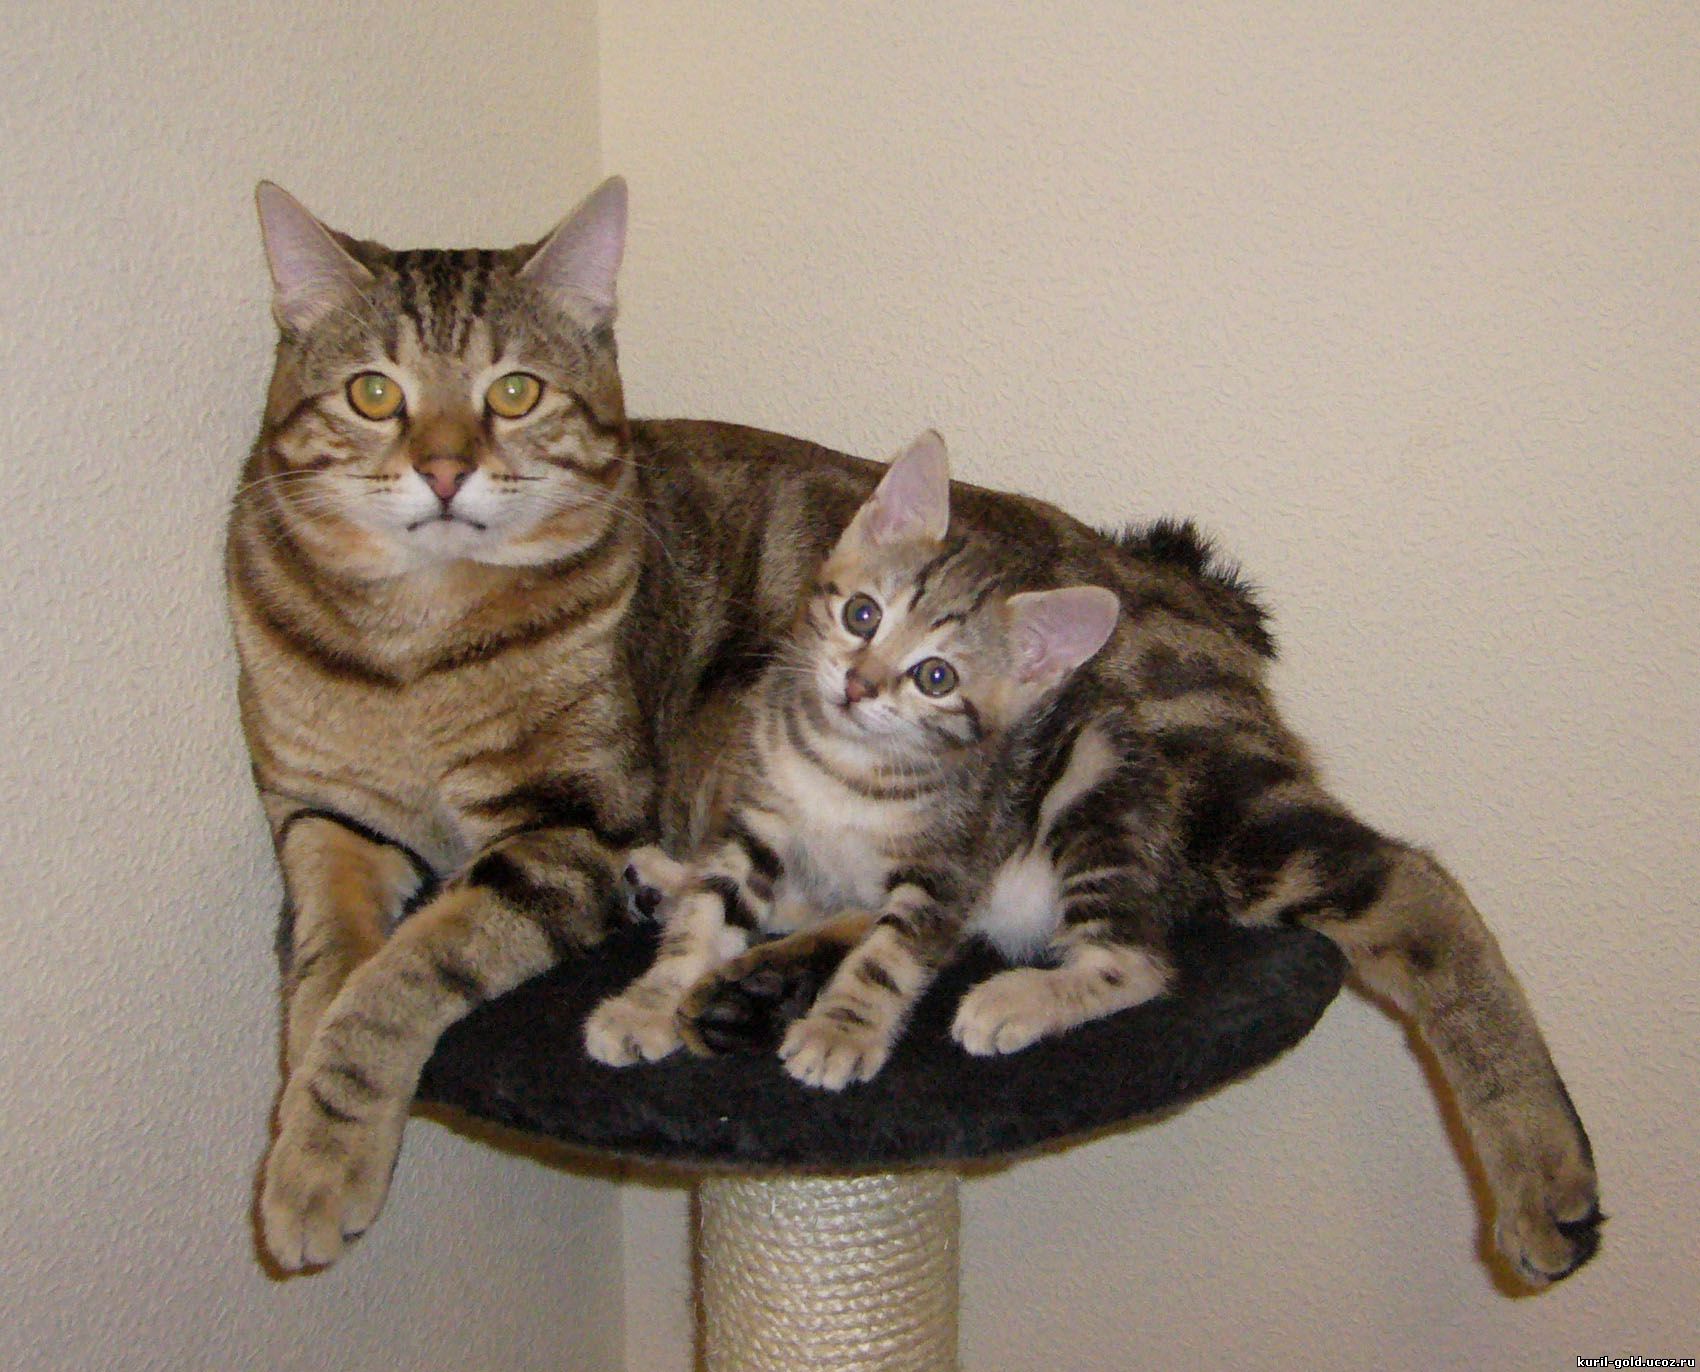 キリルボブテイル：子猫と猫​​の写真